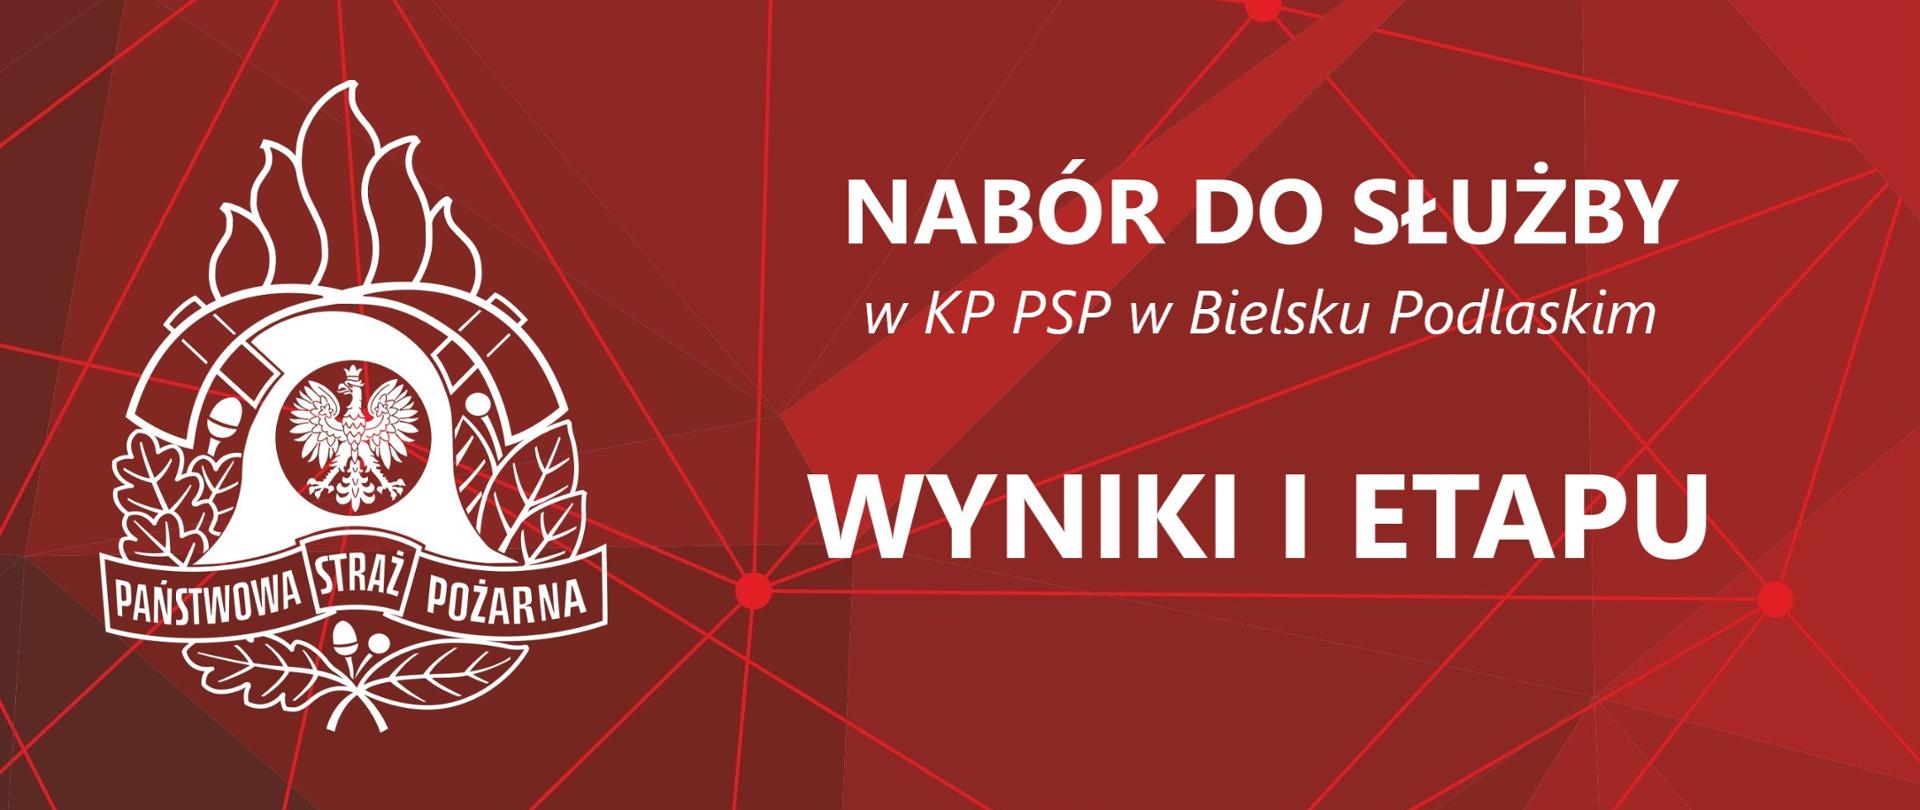 Baner z logo PSP i Napisem: Nabór do służby w KP PSP w Bielsku Podlaskim - Wyniki I etapu